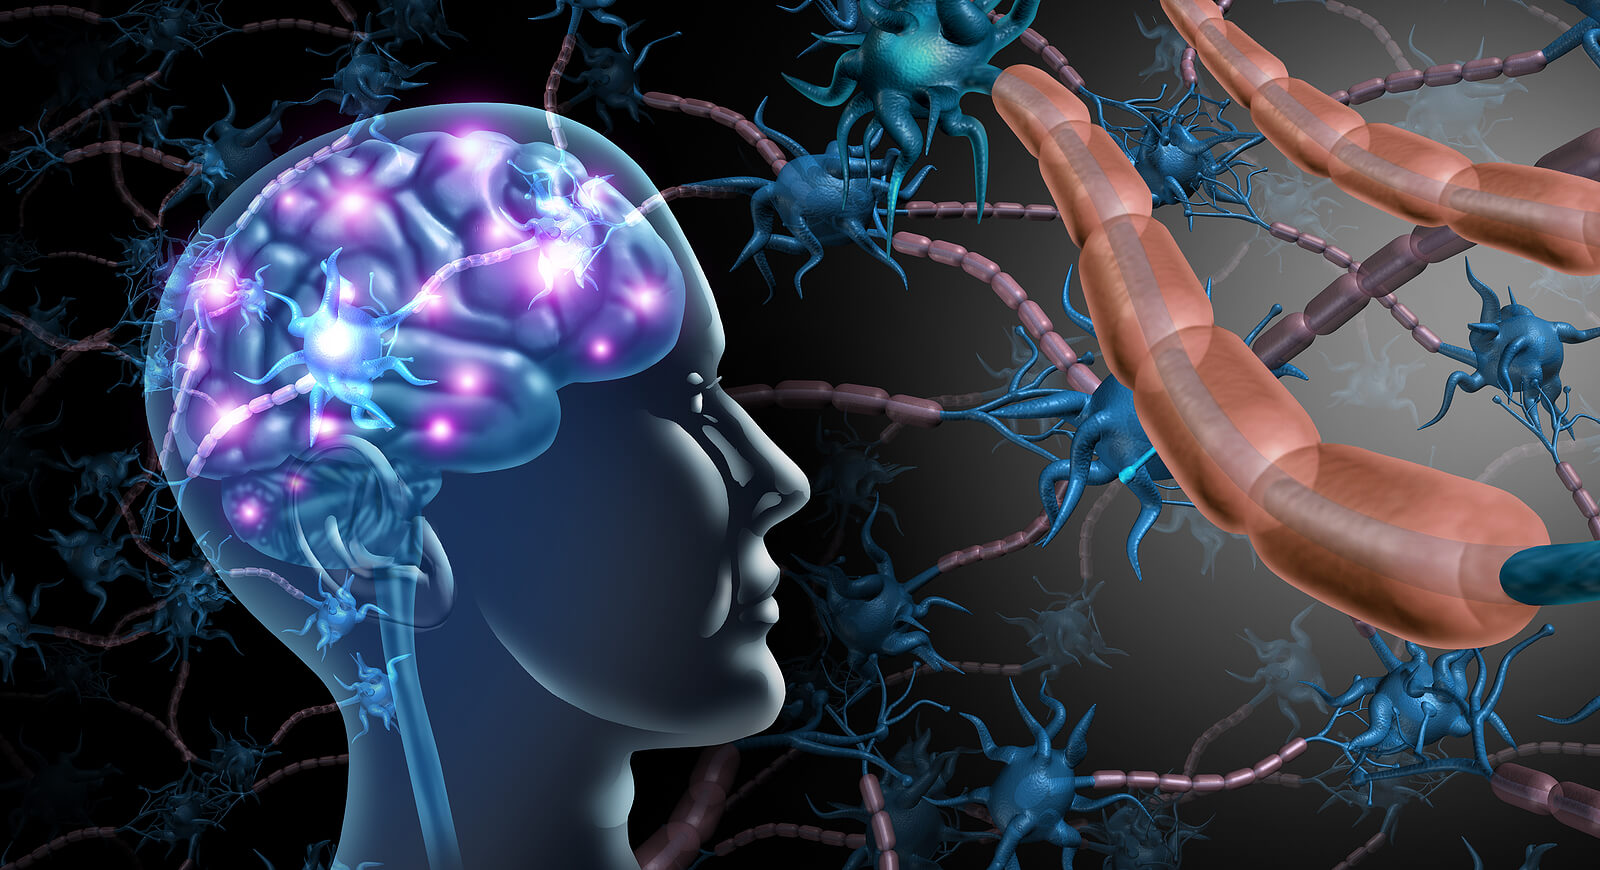 Las causas de la esclerosis múltiple incluyen reacciones autoinmunitarias